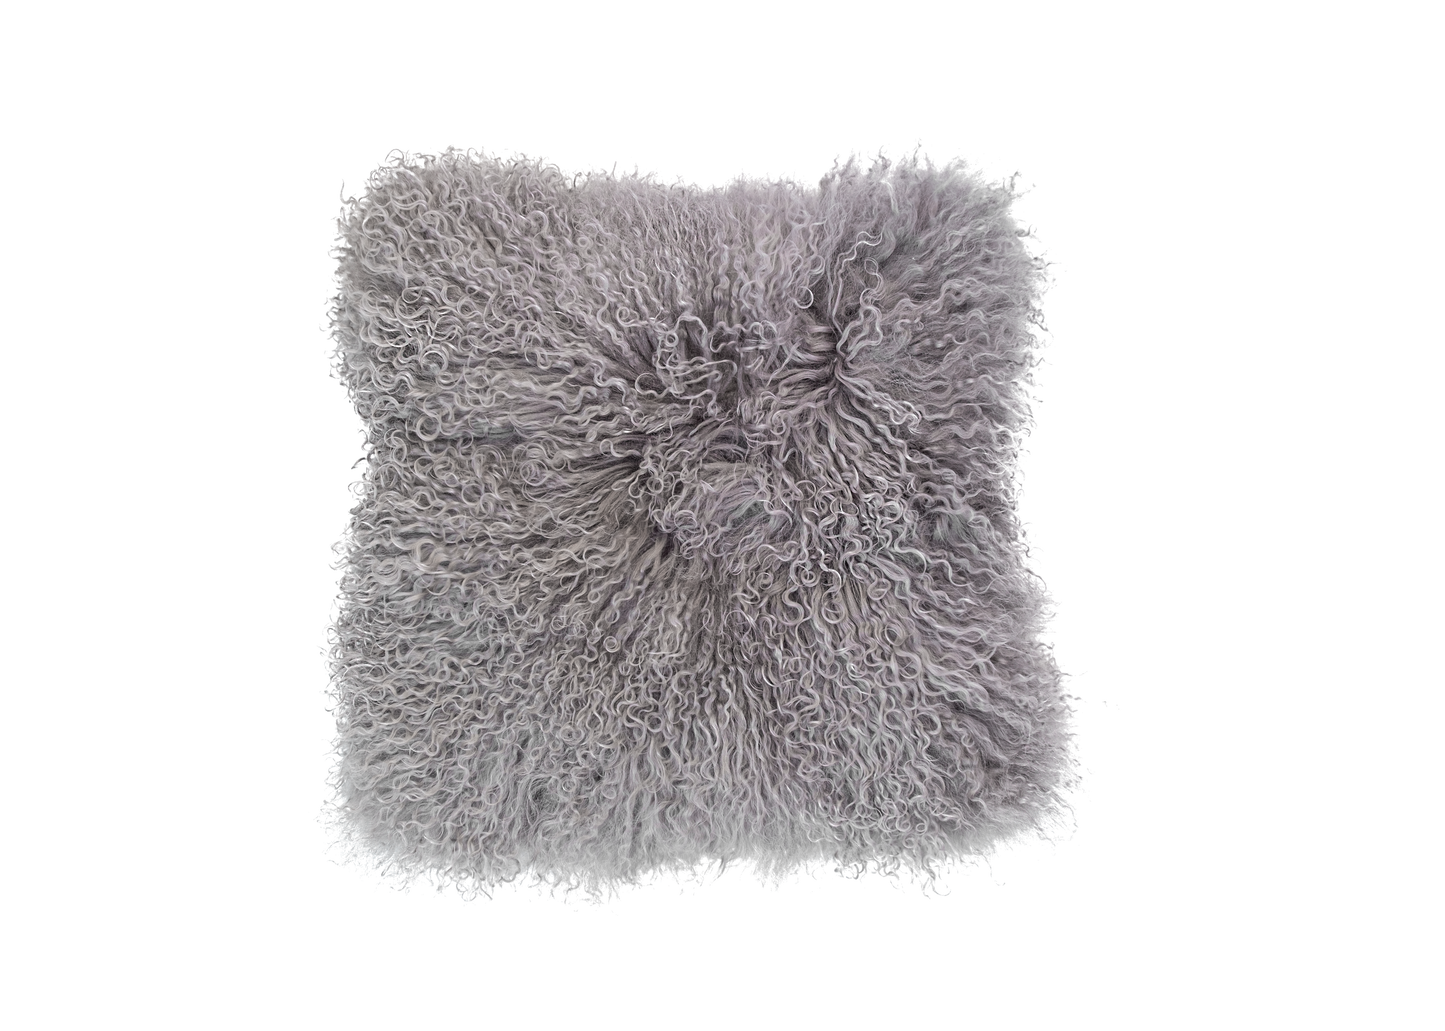 100% Natural Mongolian Sheepskin Cushion Covers - Large, Mocha